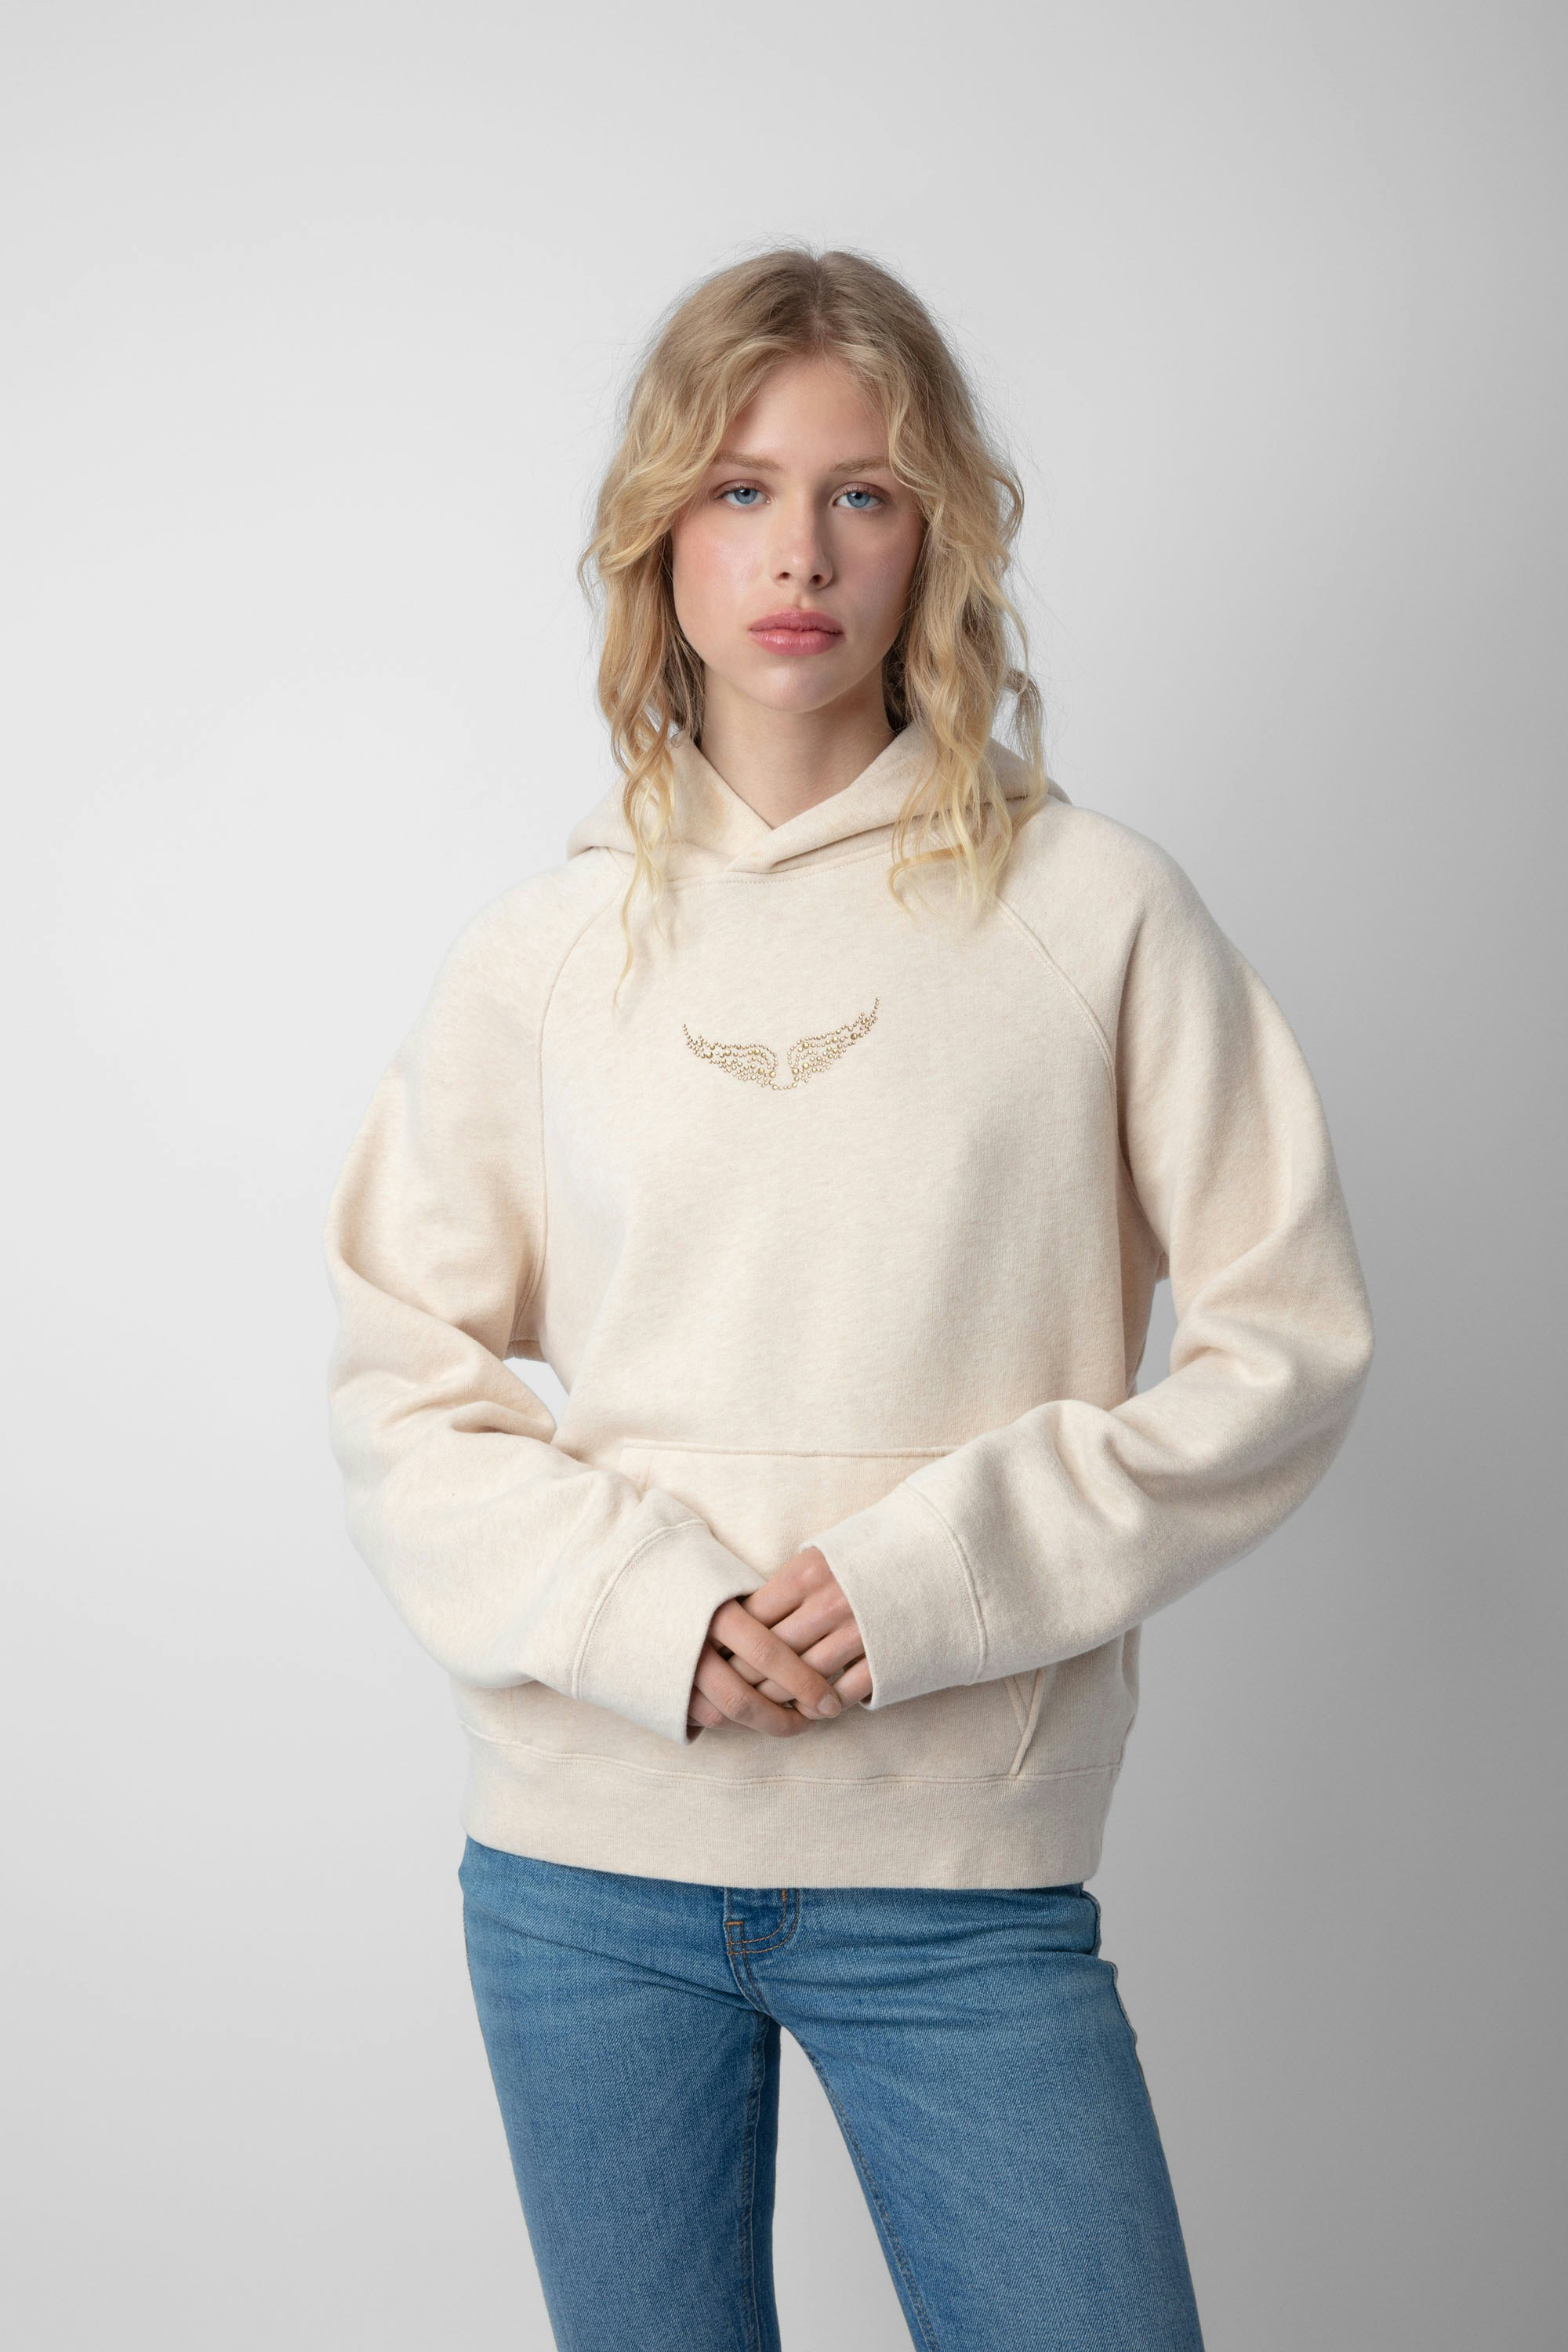 Sweatshirt Georgy Moon - Sweatshirt à capuche beige chiné orné d'ailes, d'un photoprint Moon et de strass.